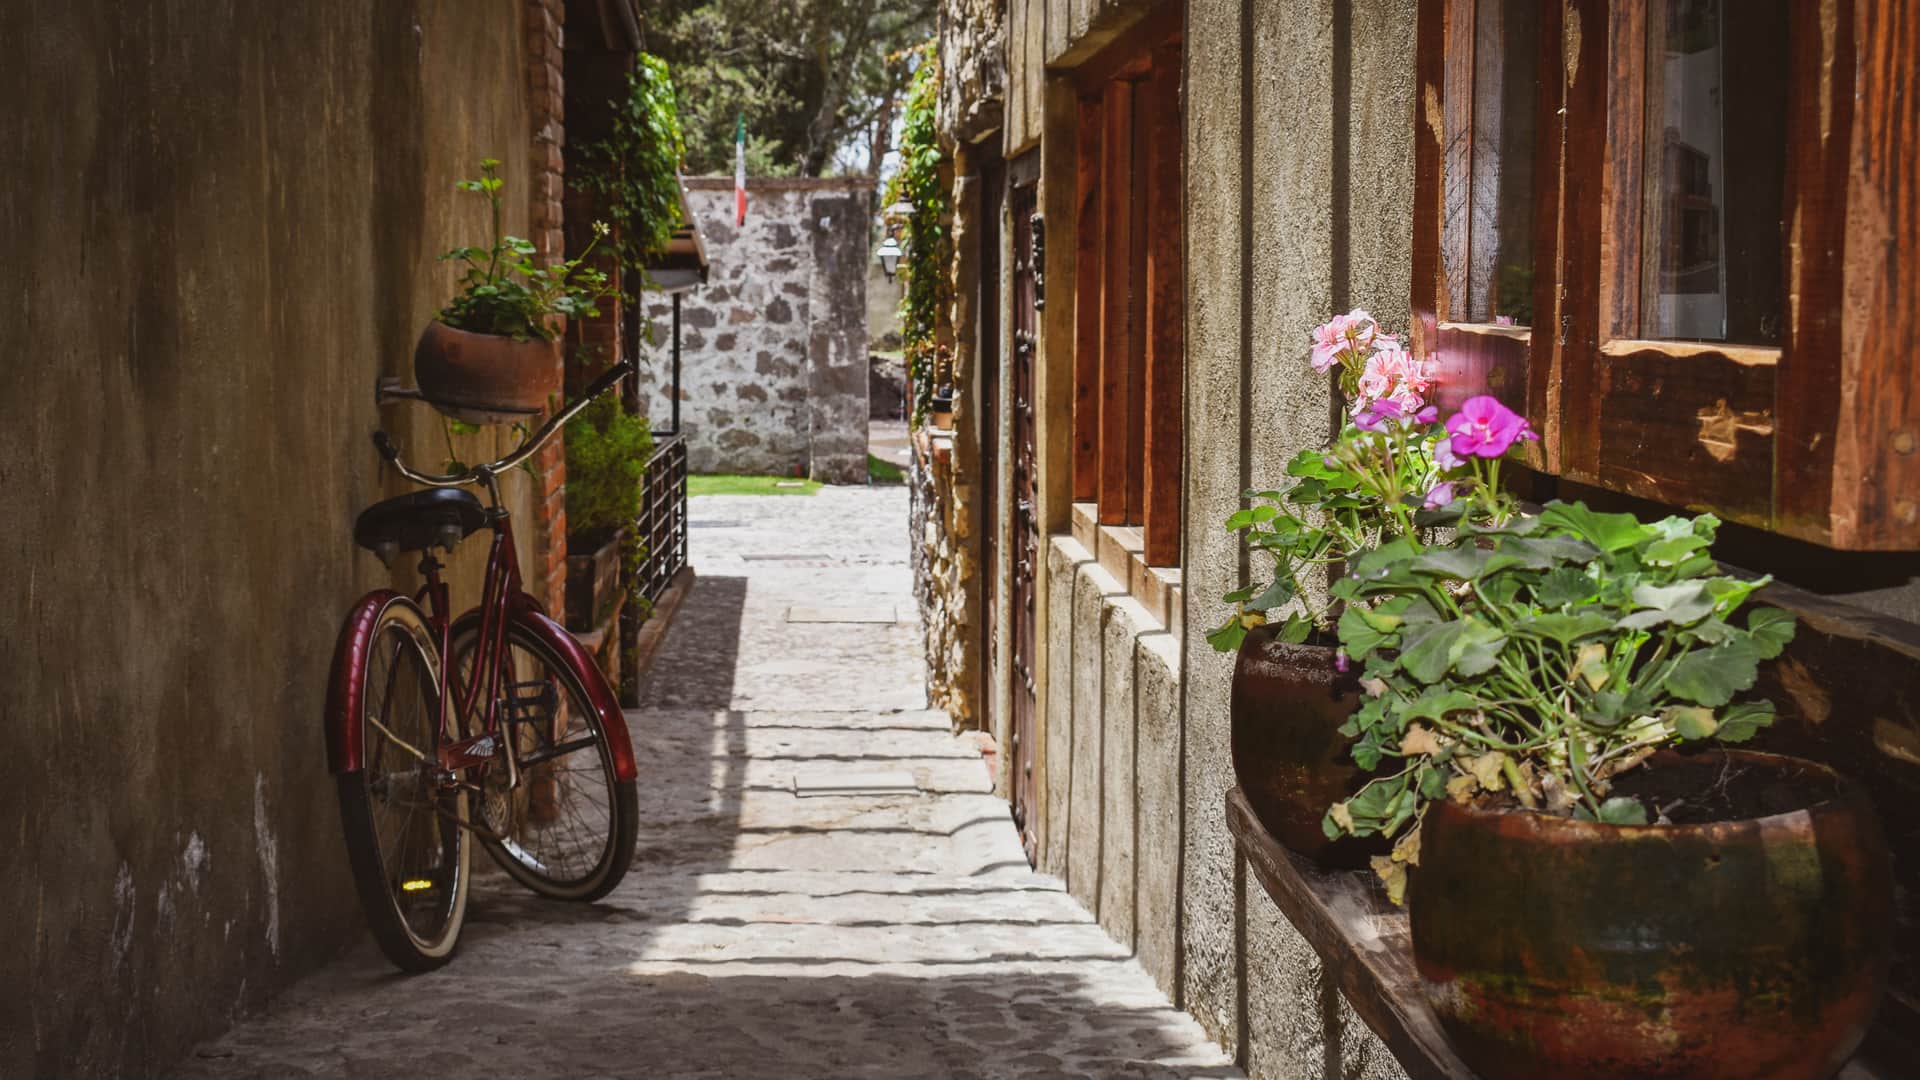 estrecha calle de tlaxcala mexico con una bici que es una localidad que dispone de sucursal de sky